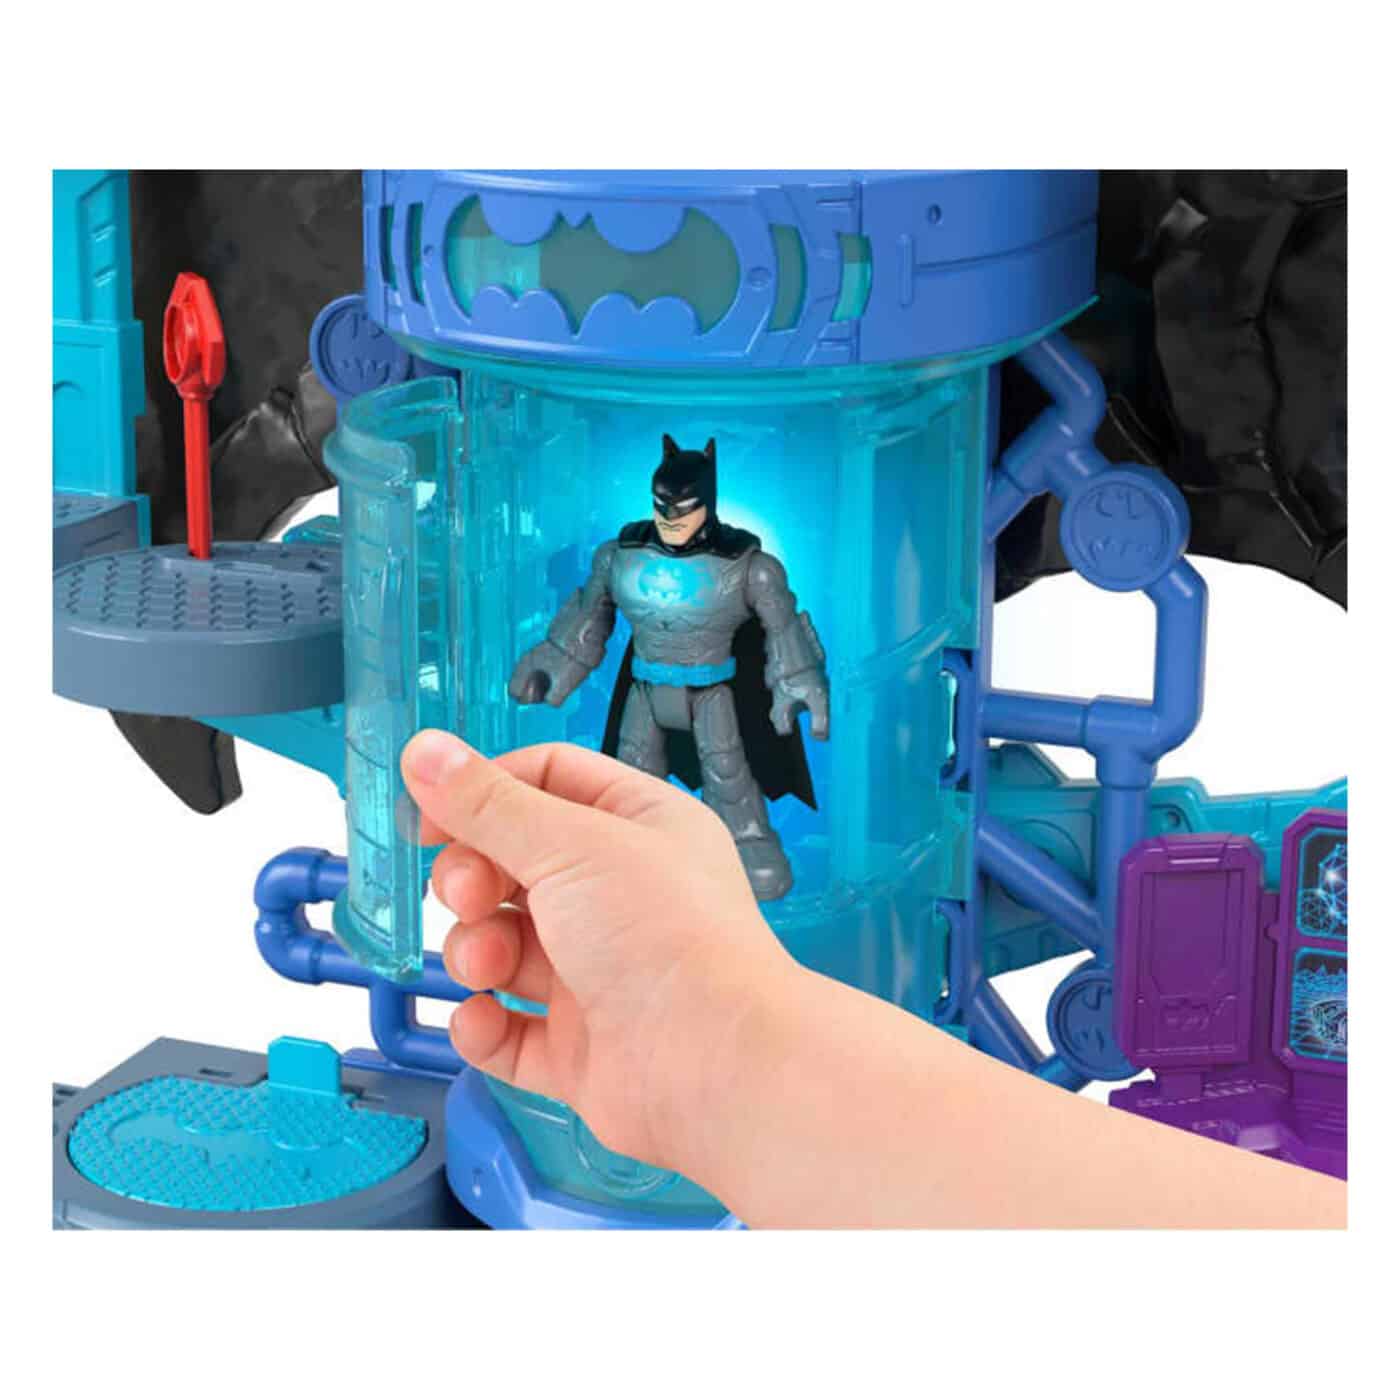 Imaginext - DC Super Friends - BatTech Batcave